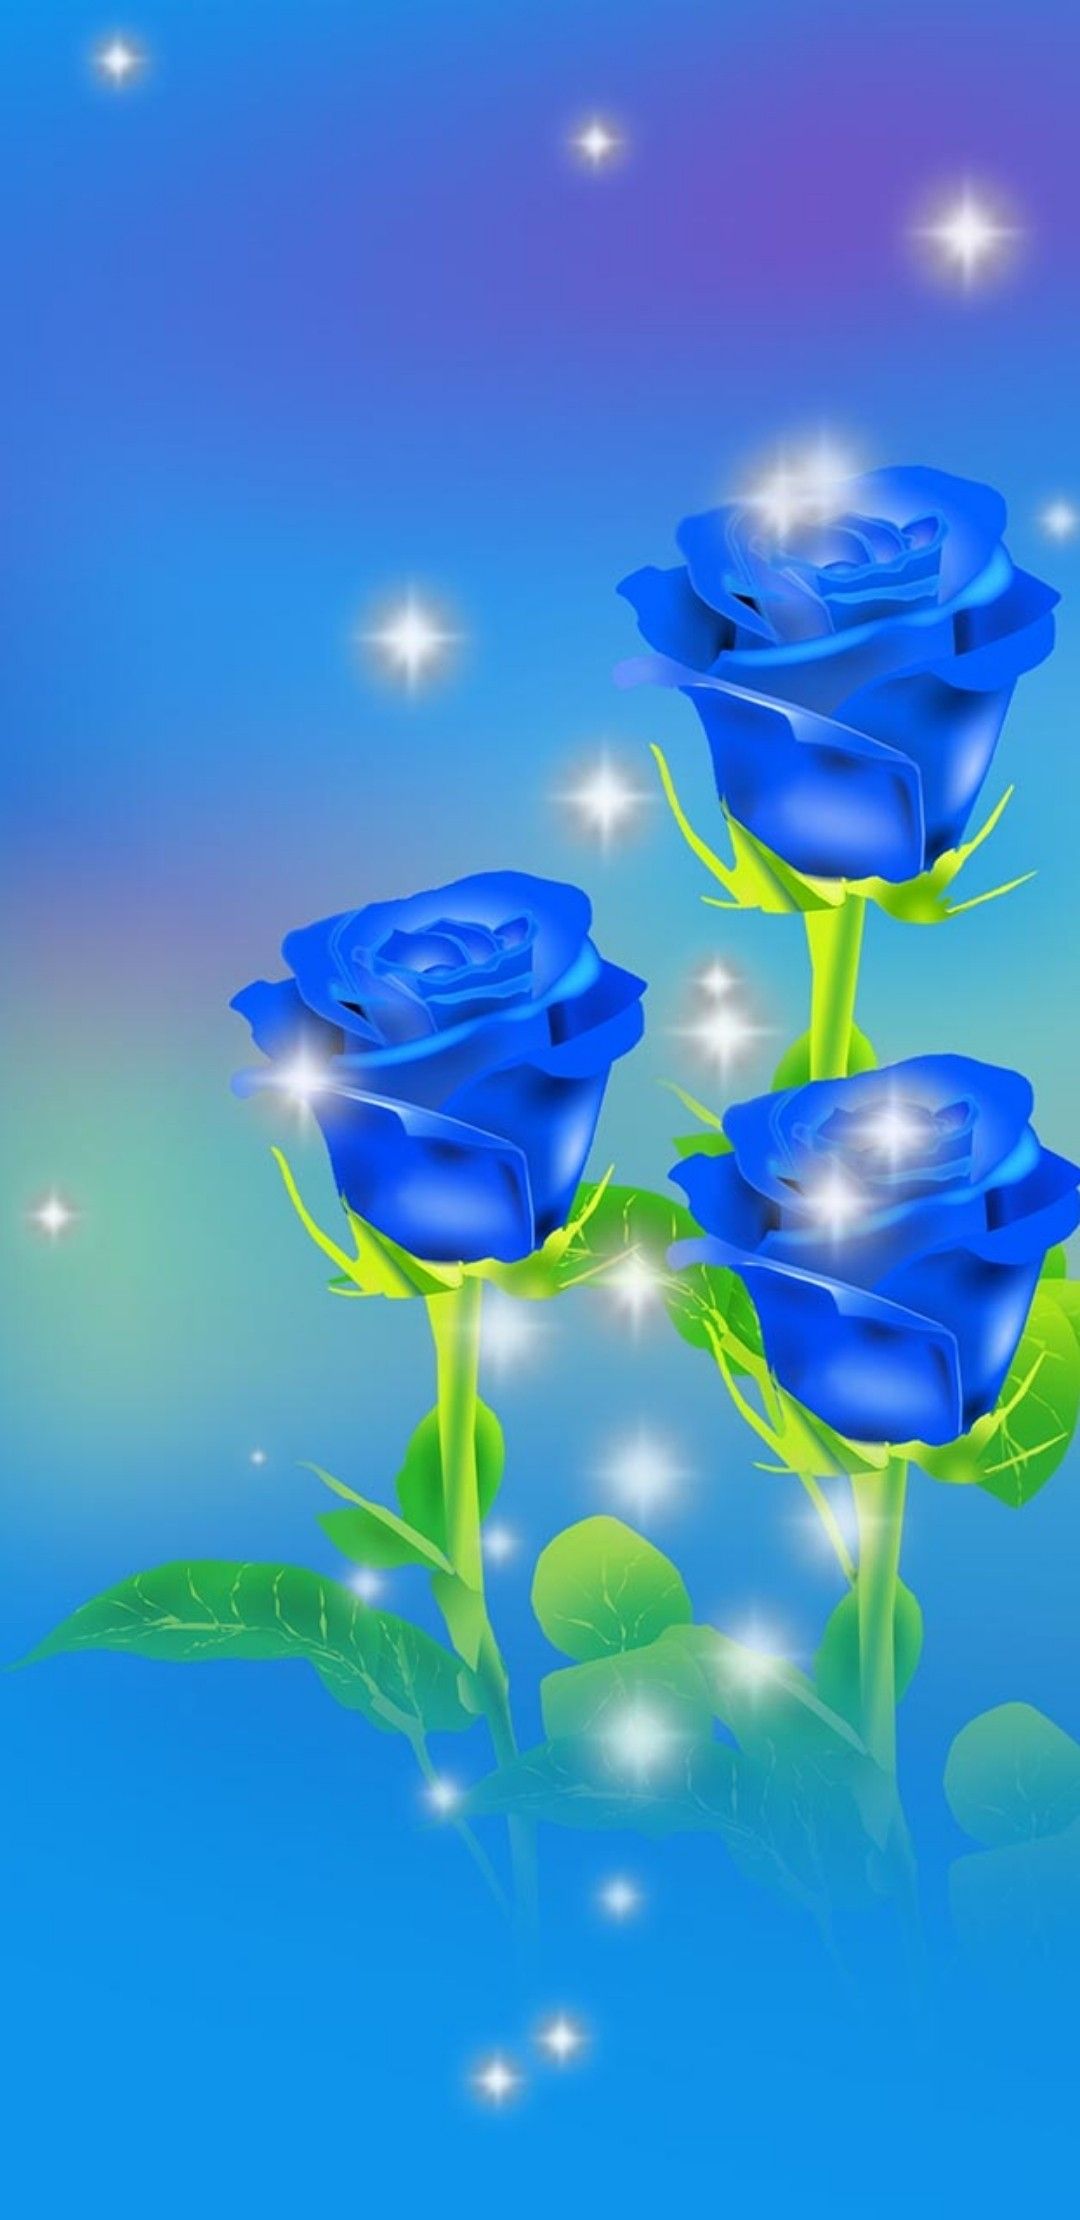 belle immagini di rose per carta da parati,blu,rosa blu,acqua,fiore,rosa